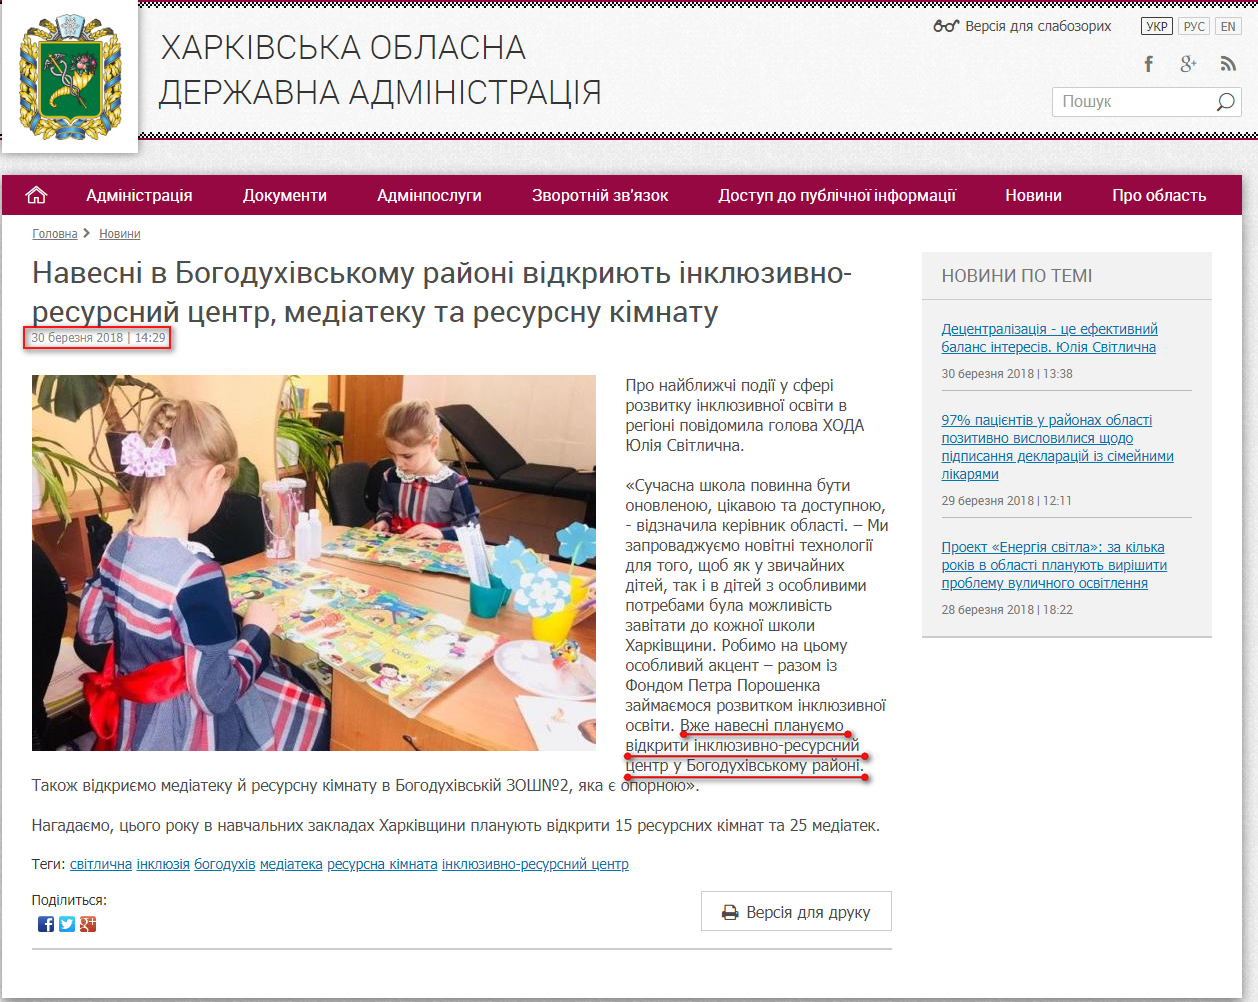 http://kharkivoda.gov.ua/news/92052